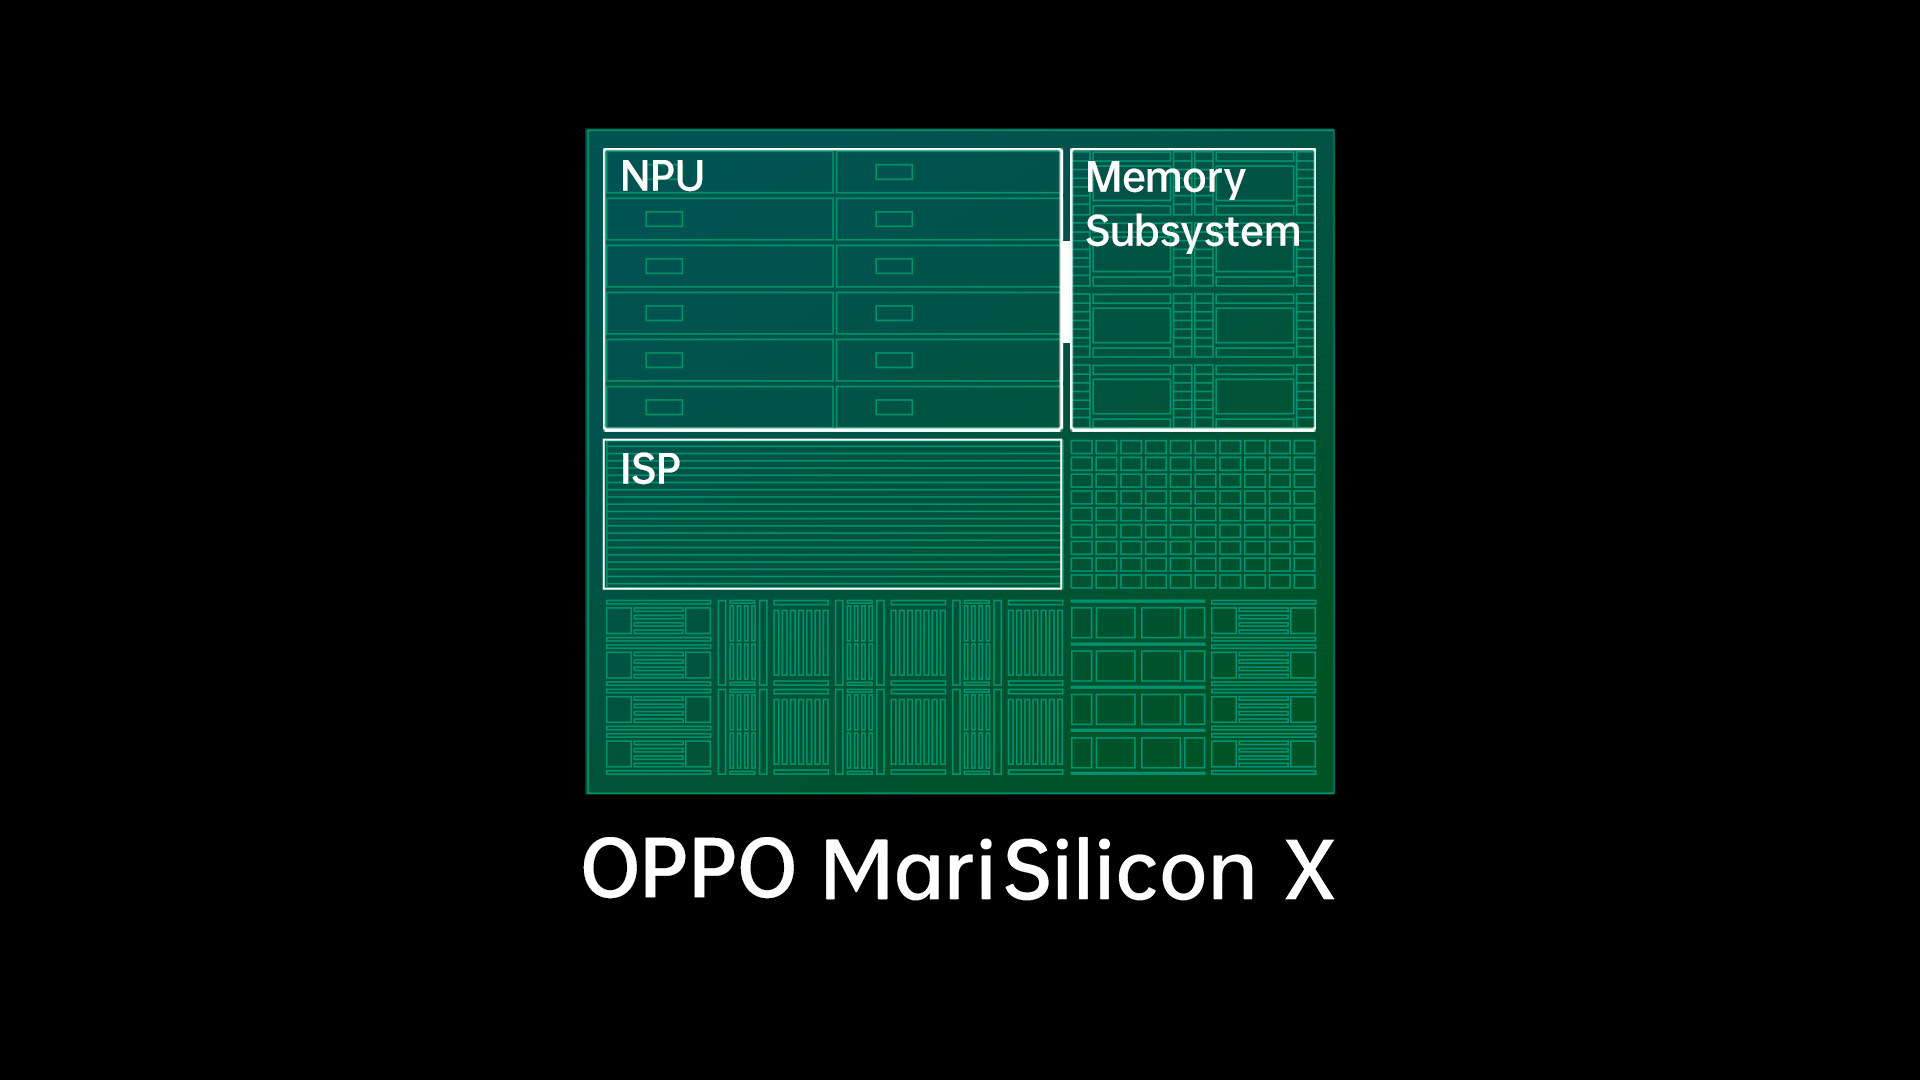 OPPO ra mắt Bộ vi xử lý NPU hình ảnh chuyên dụng 6nm đầu tiên - MariSilicon X